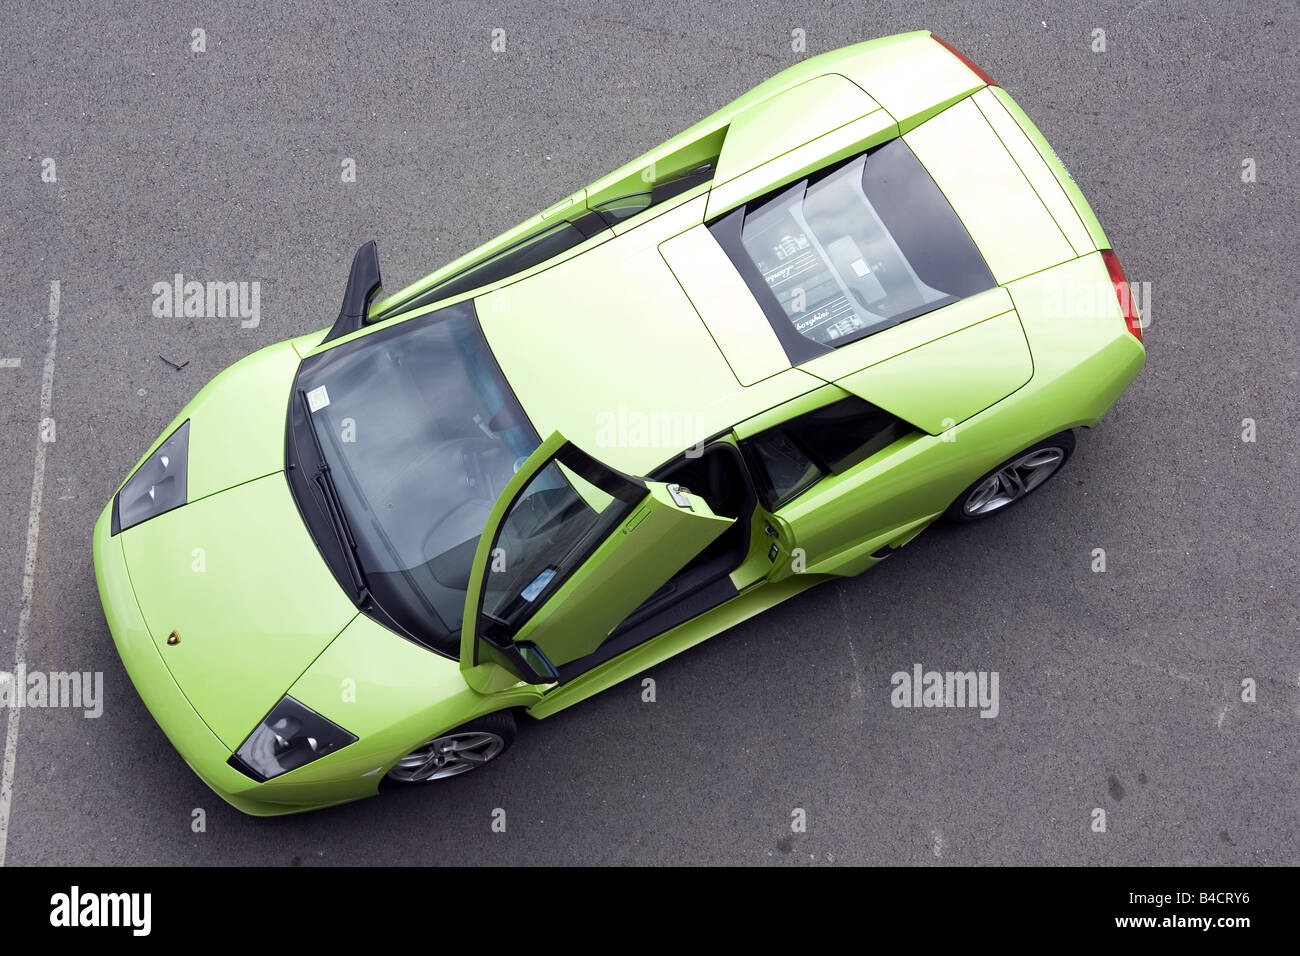 Lamborghini Murciélago LP 640, l'année de modèle 2006-, vert, debout, de faire respecter, d'en haut Banque D'Images